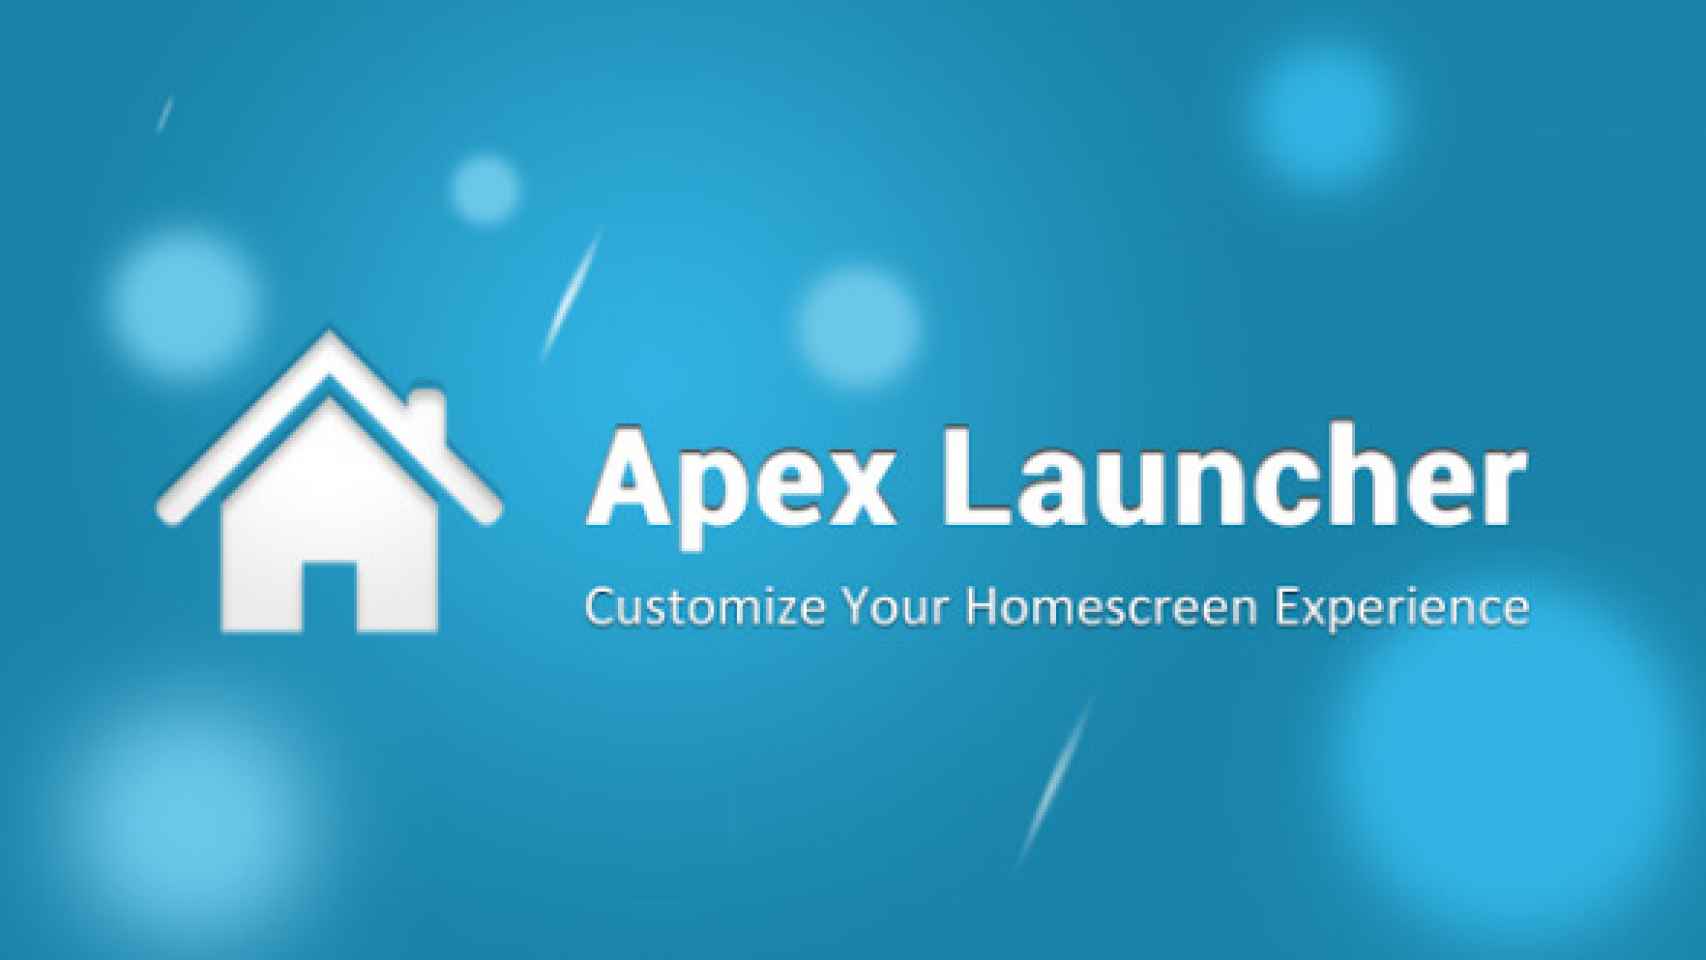 Llega la primera beta de Apex Launcher 2.0 con nuevas notificaciones como acompañantes